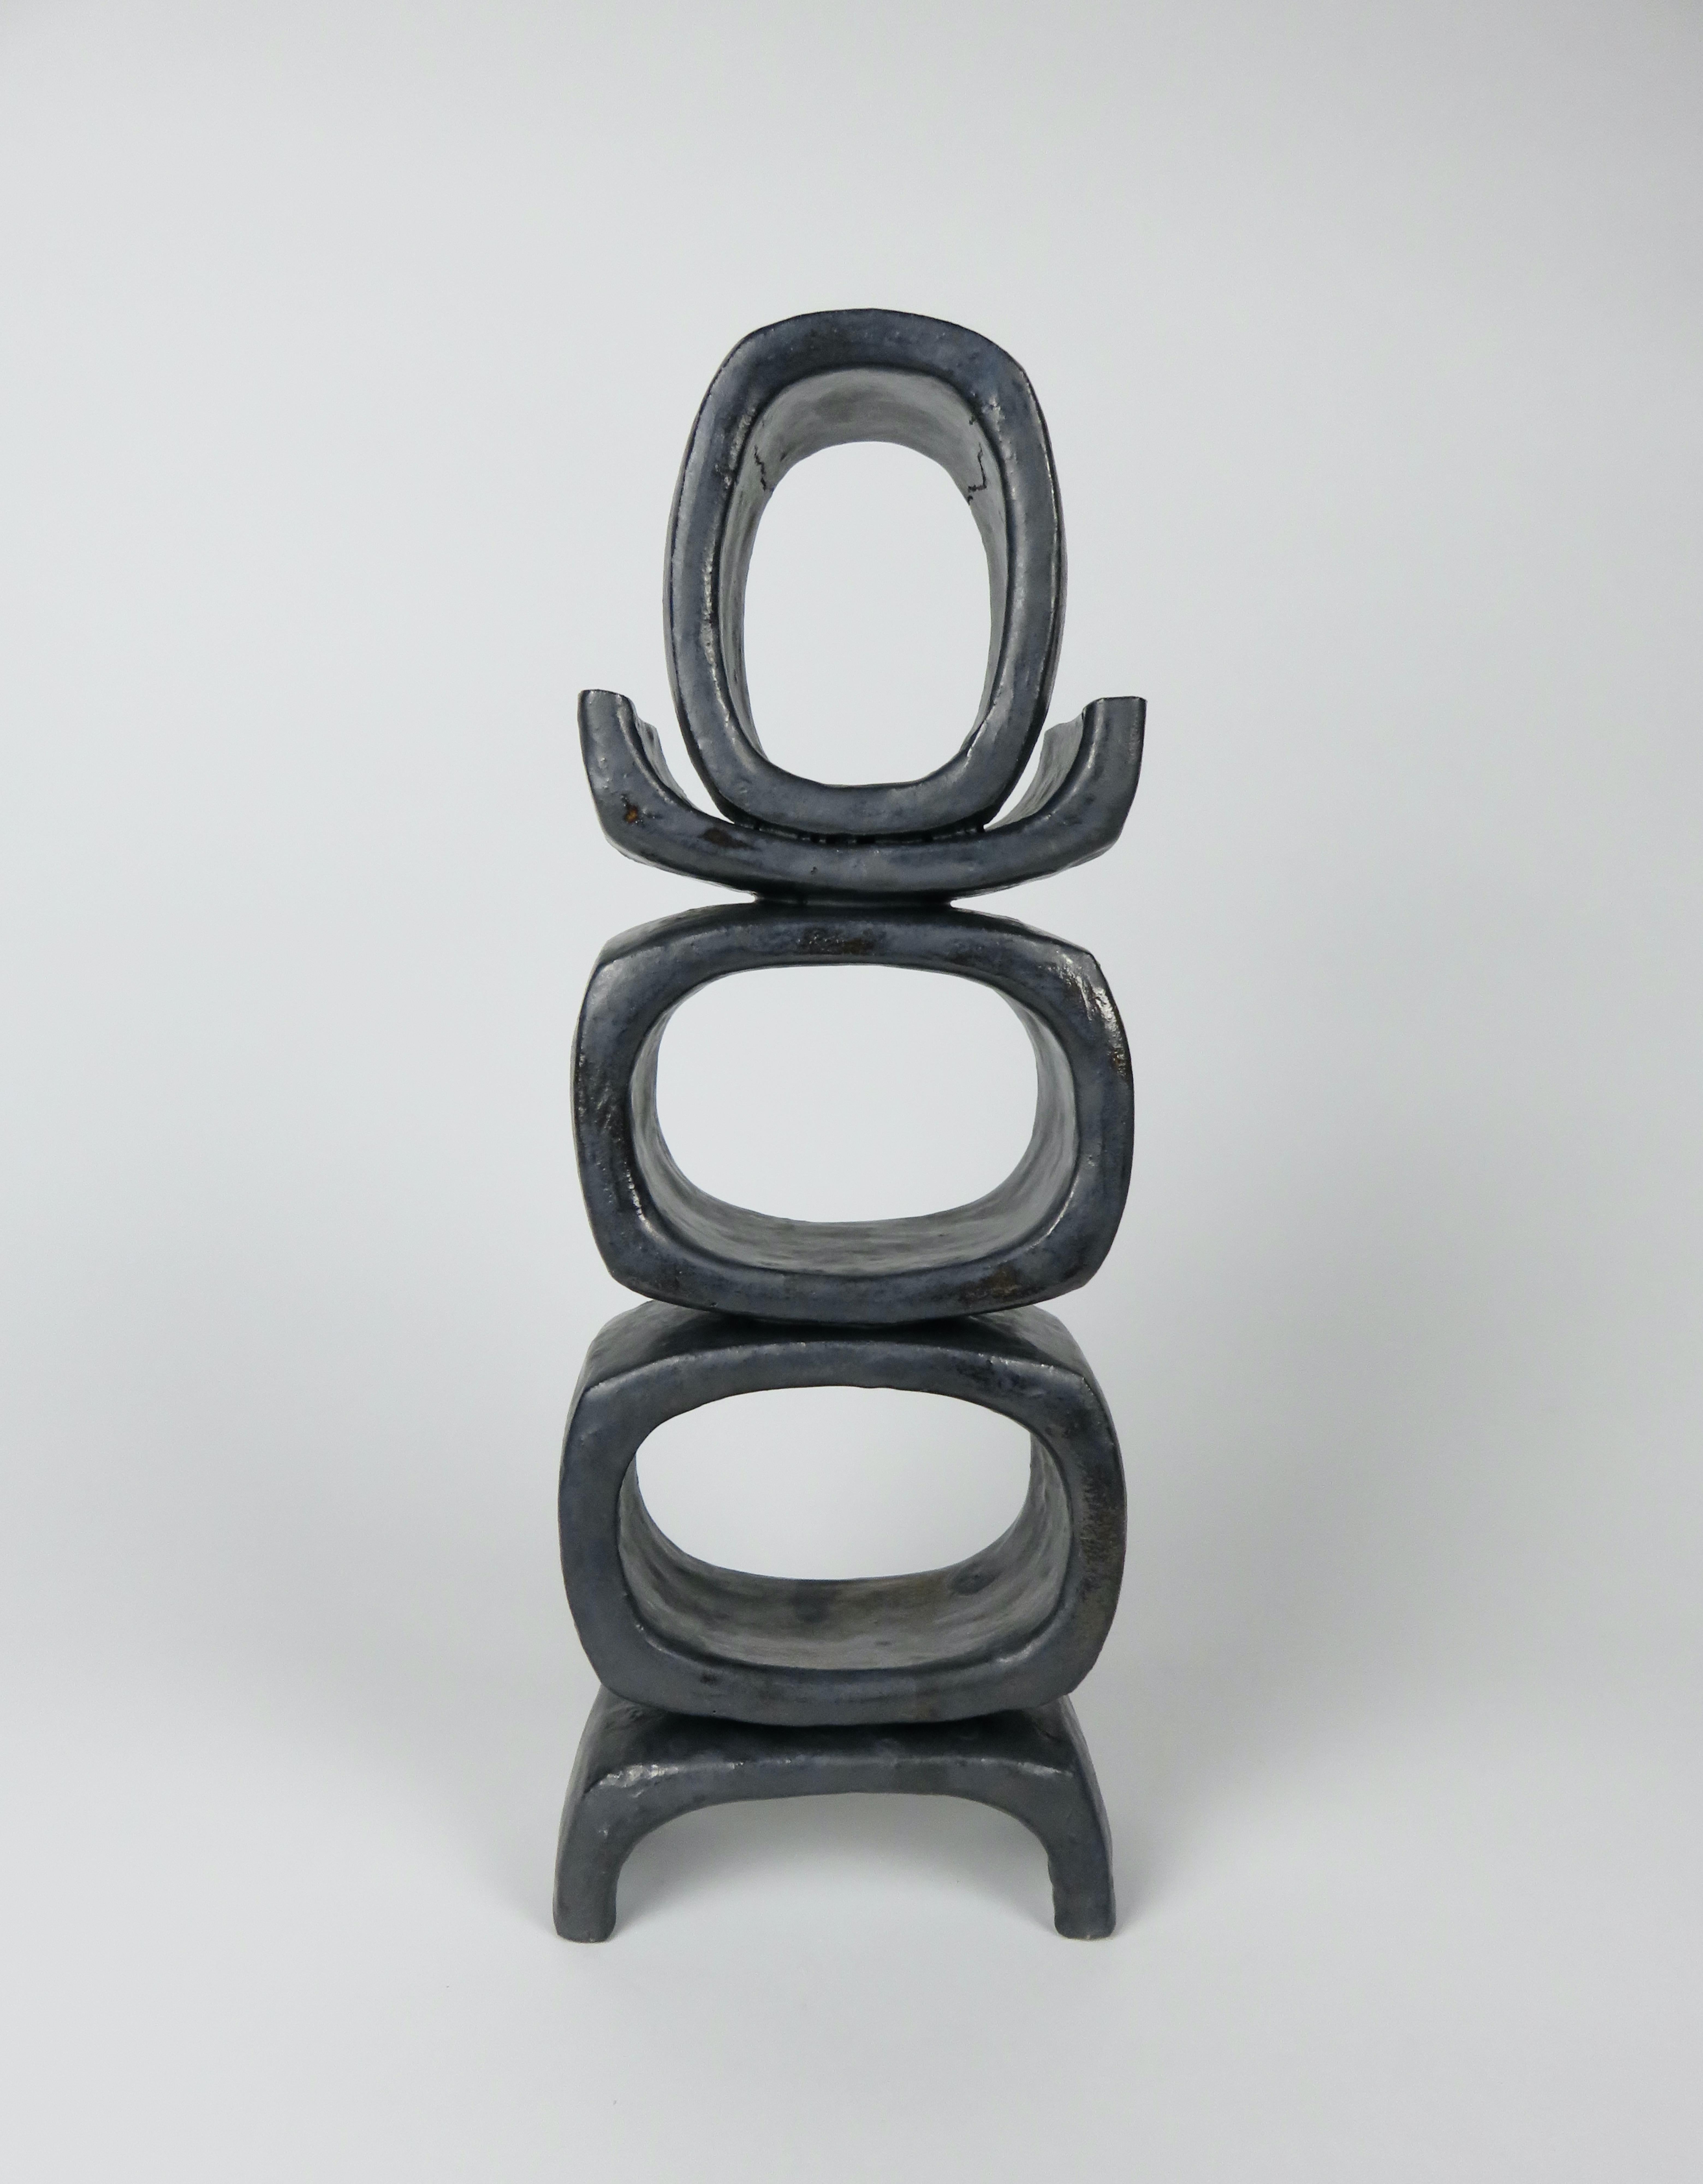 Vernissé 3 pieds ovales rectangulaires sur pieds angulaires courts, sculpture en argile métallique noire émaillée n° 2 en vente